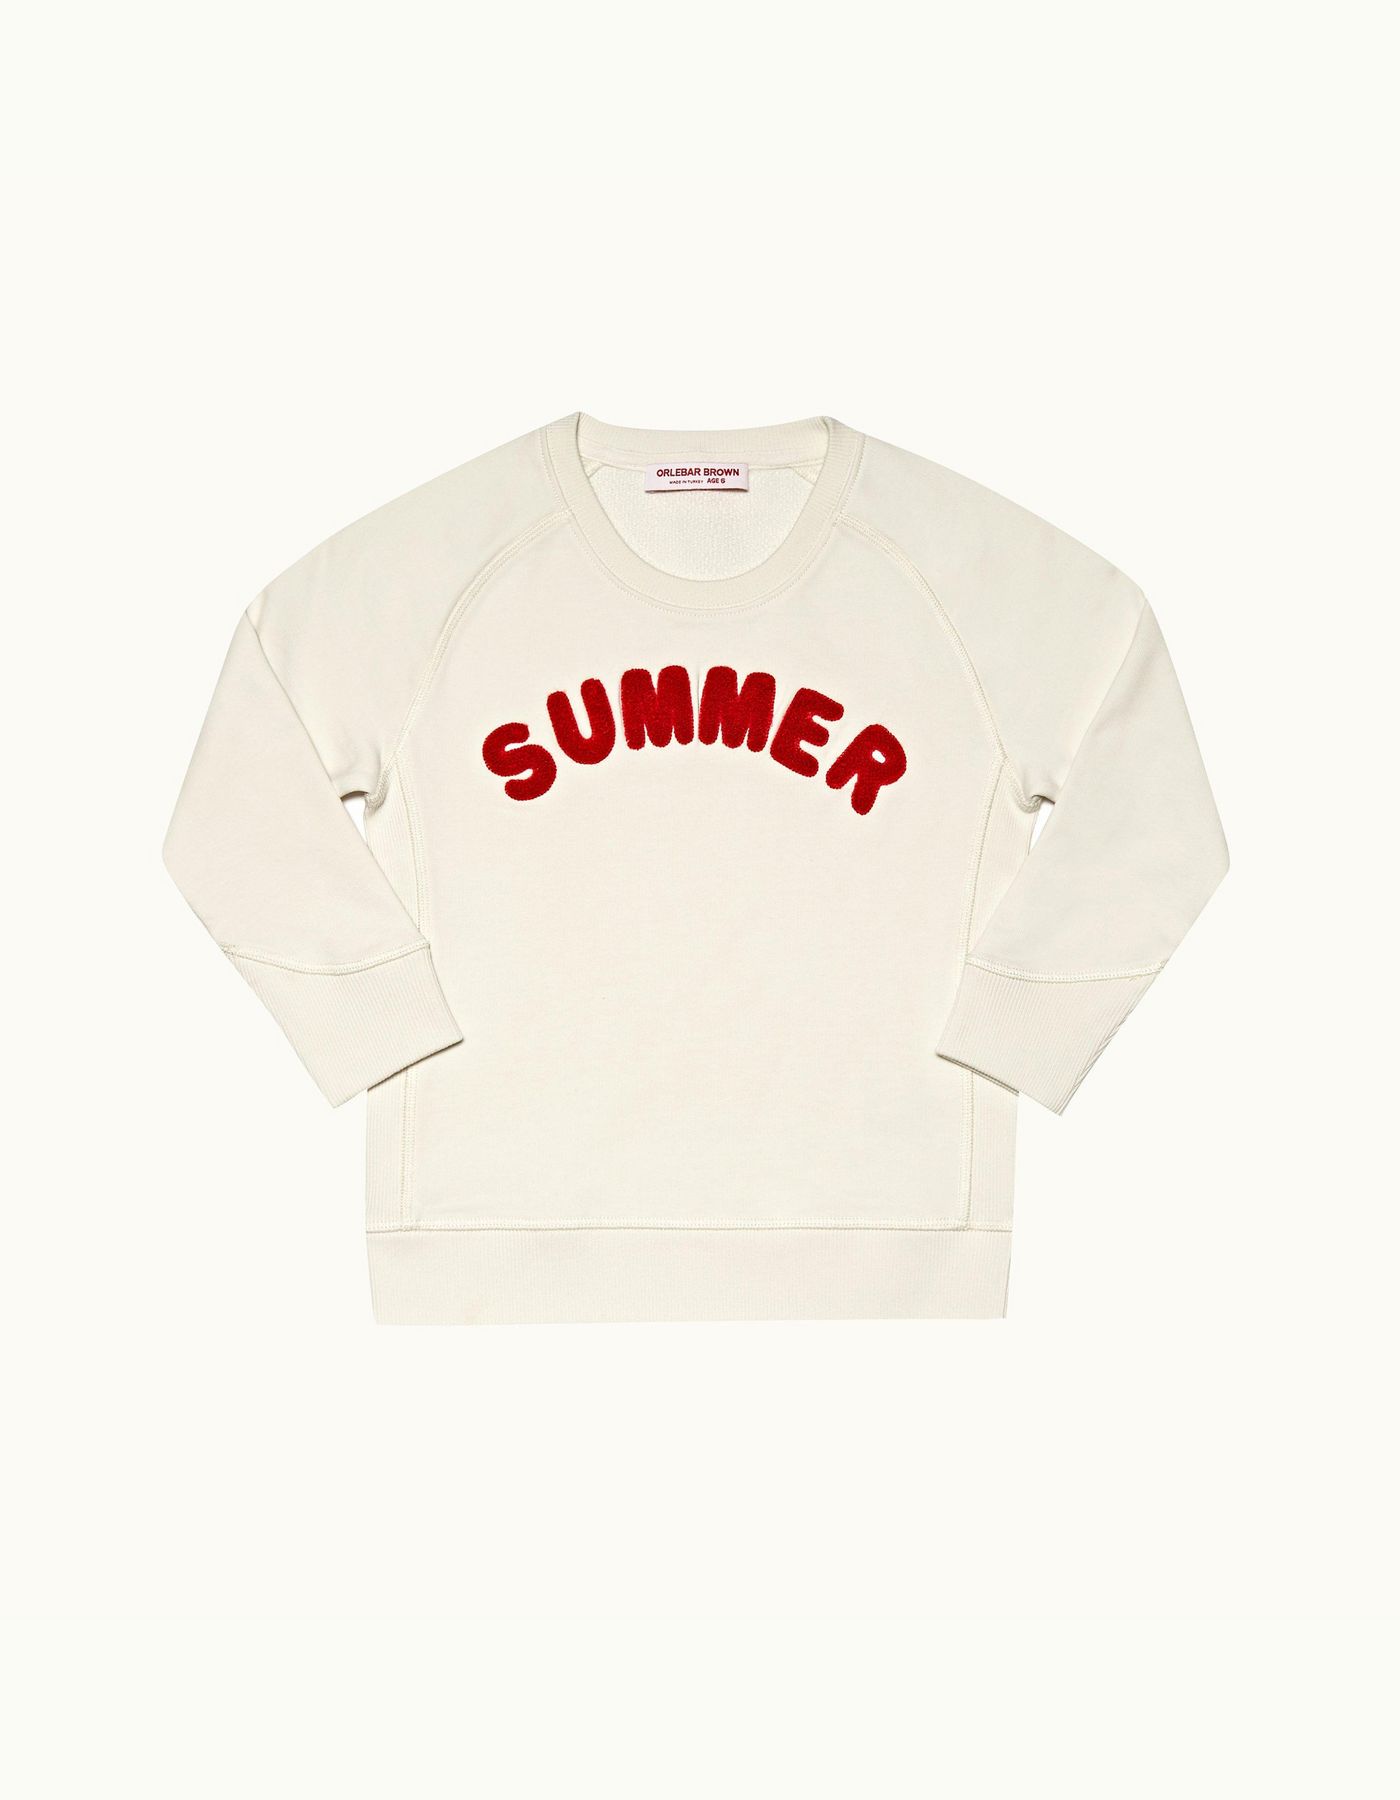 Karter - Childrens White Sand 'Summer' Slogan Organic Cotton Sweatshirt